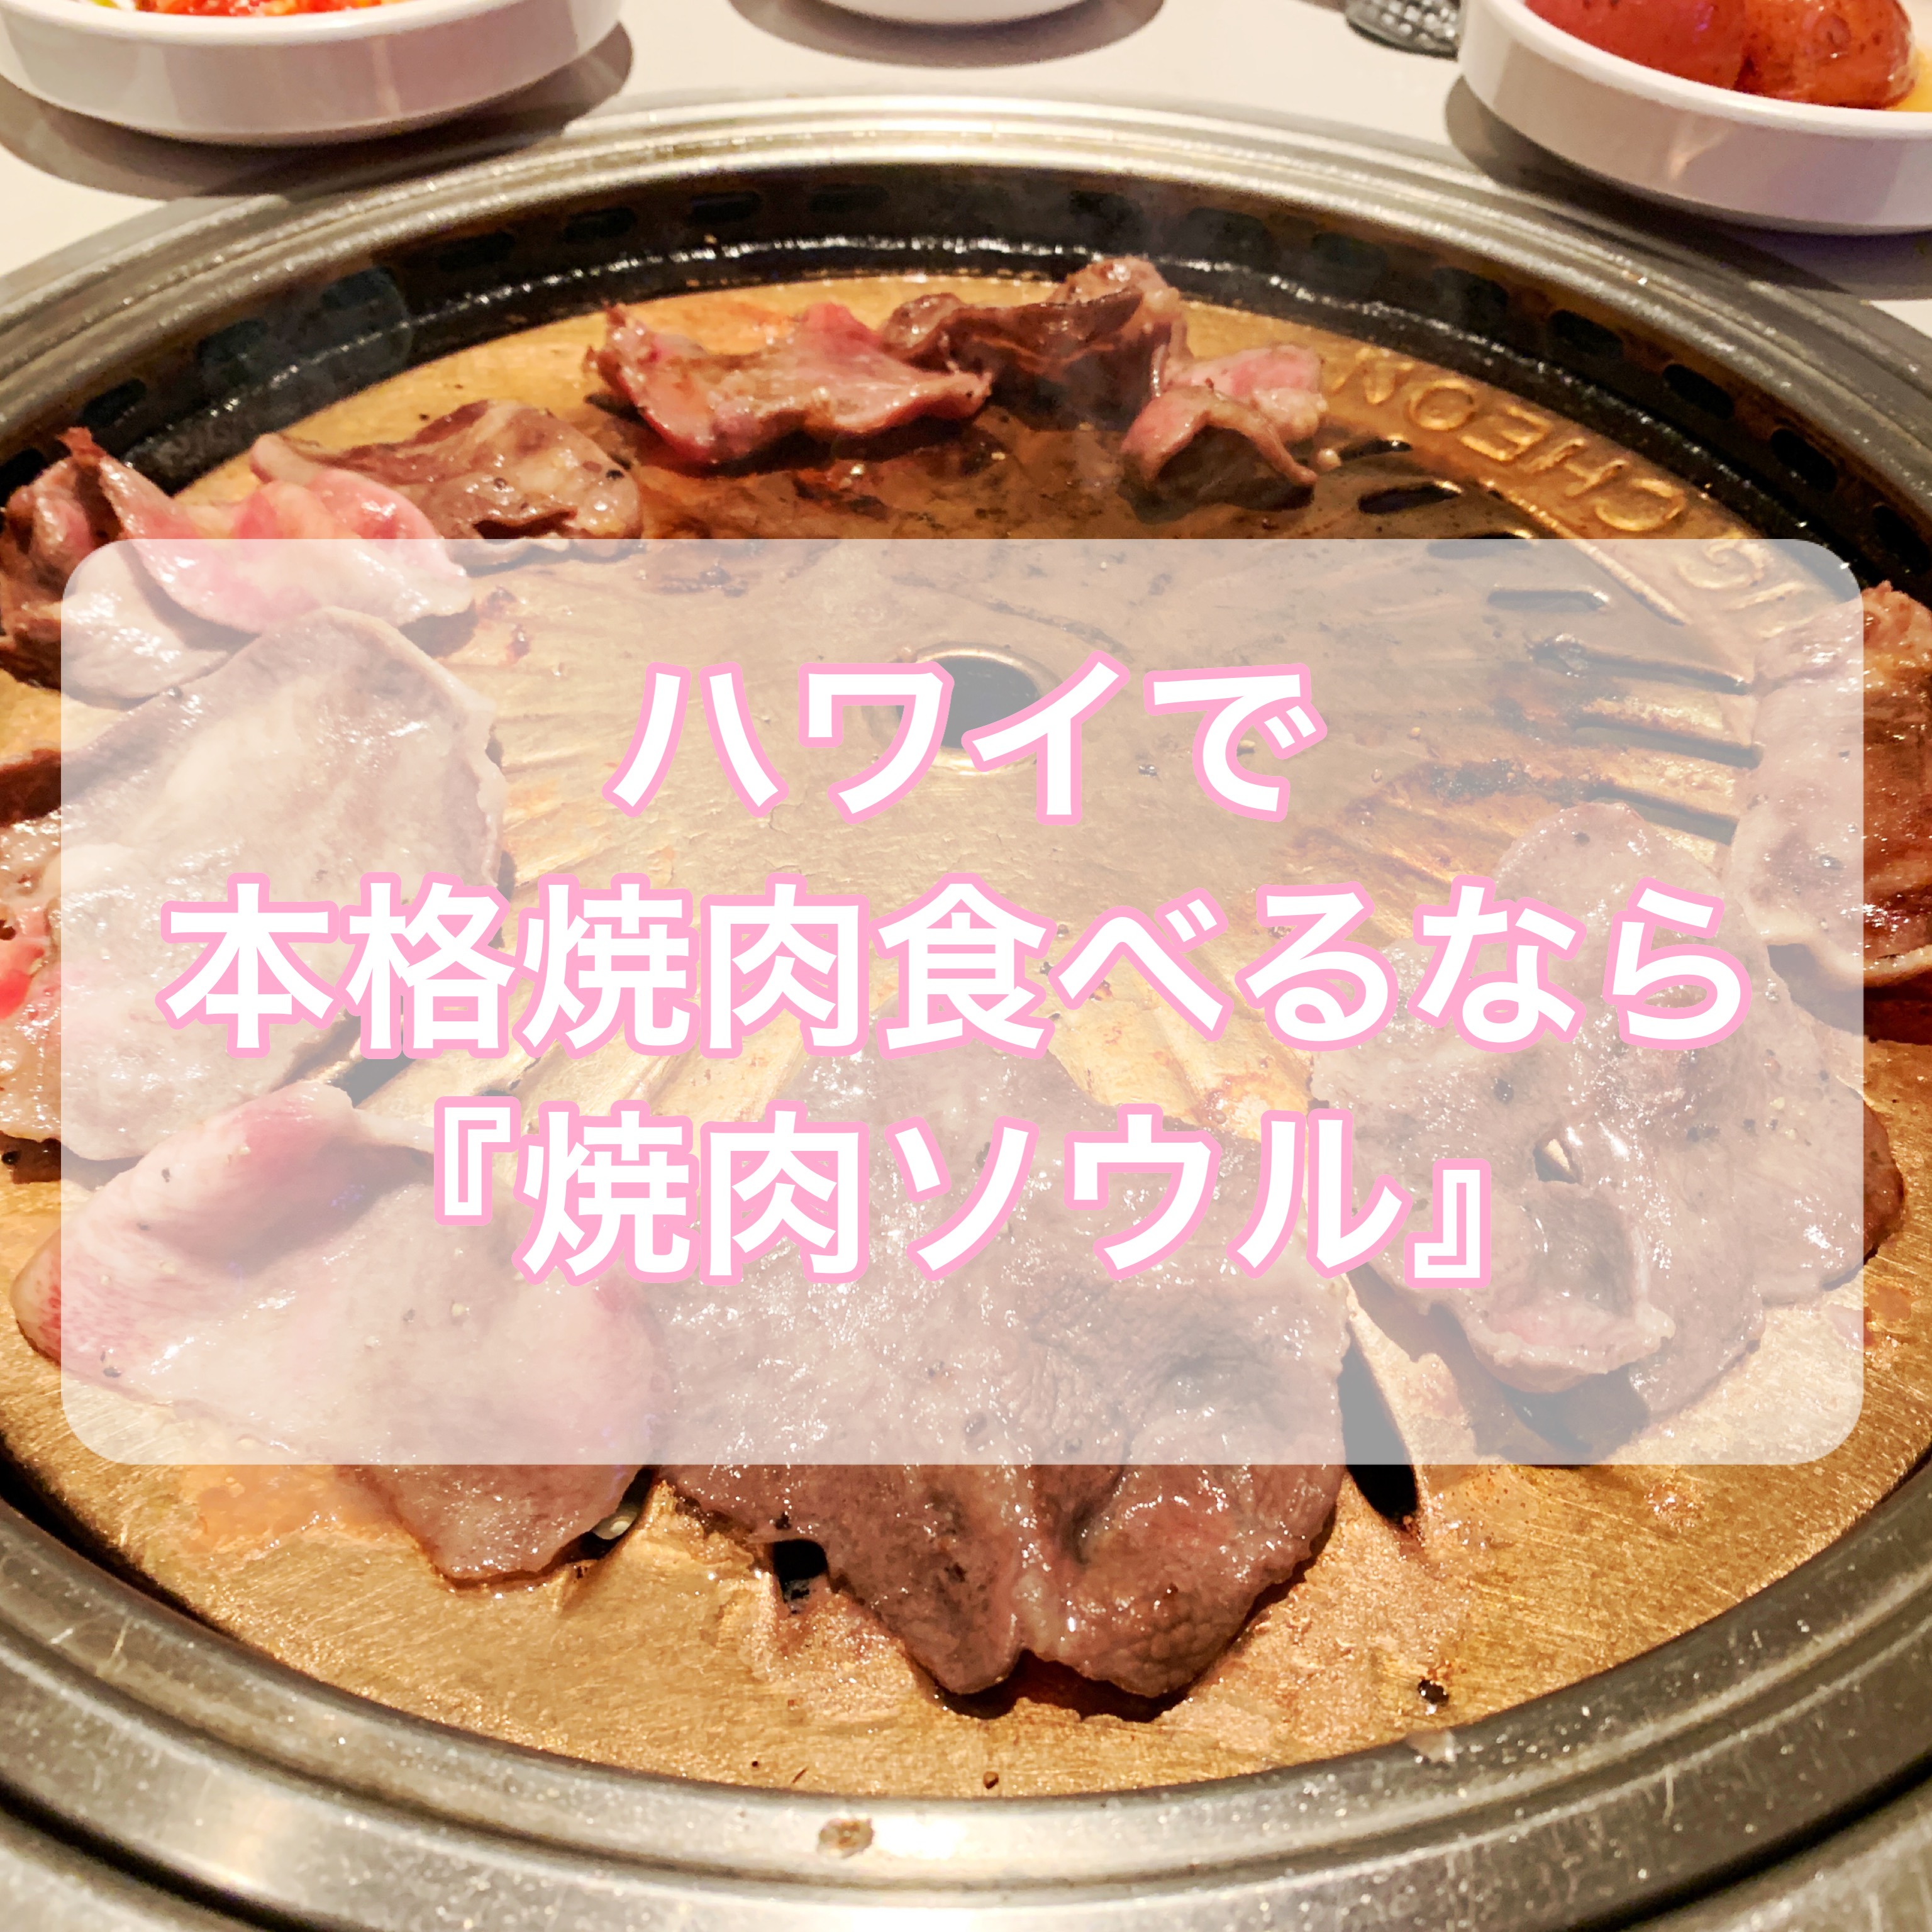 【ハワイグルメ】本格韓国焼肉食べるなら「焼肉ソウル」【おすすめ】